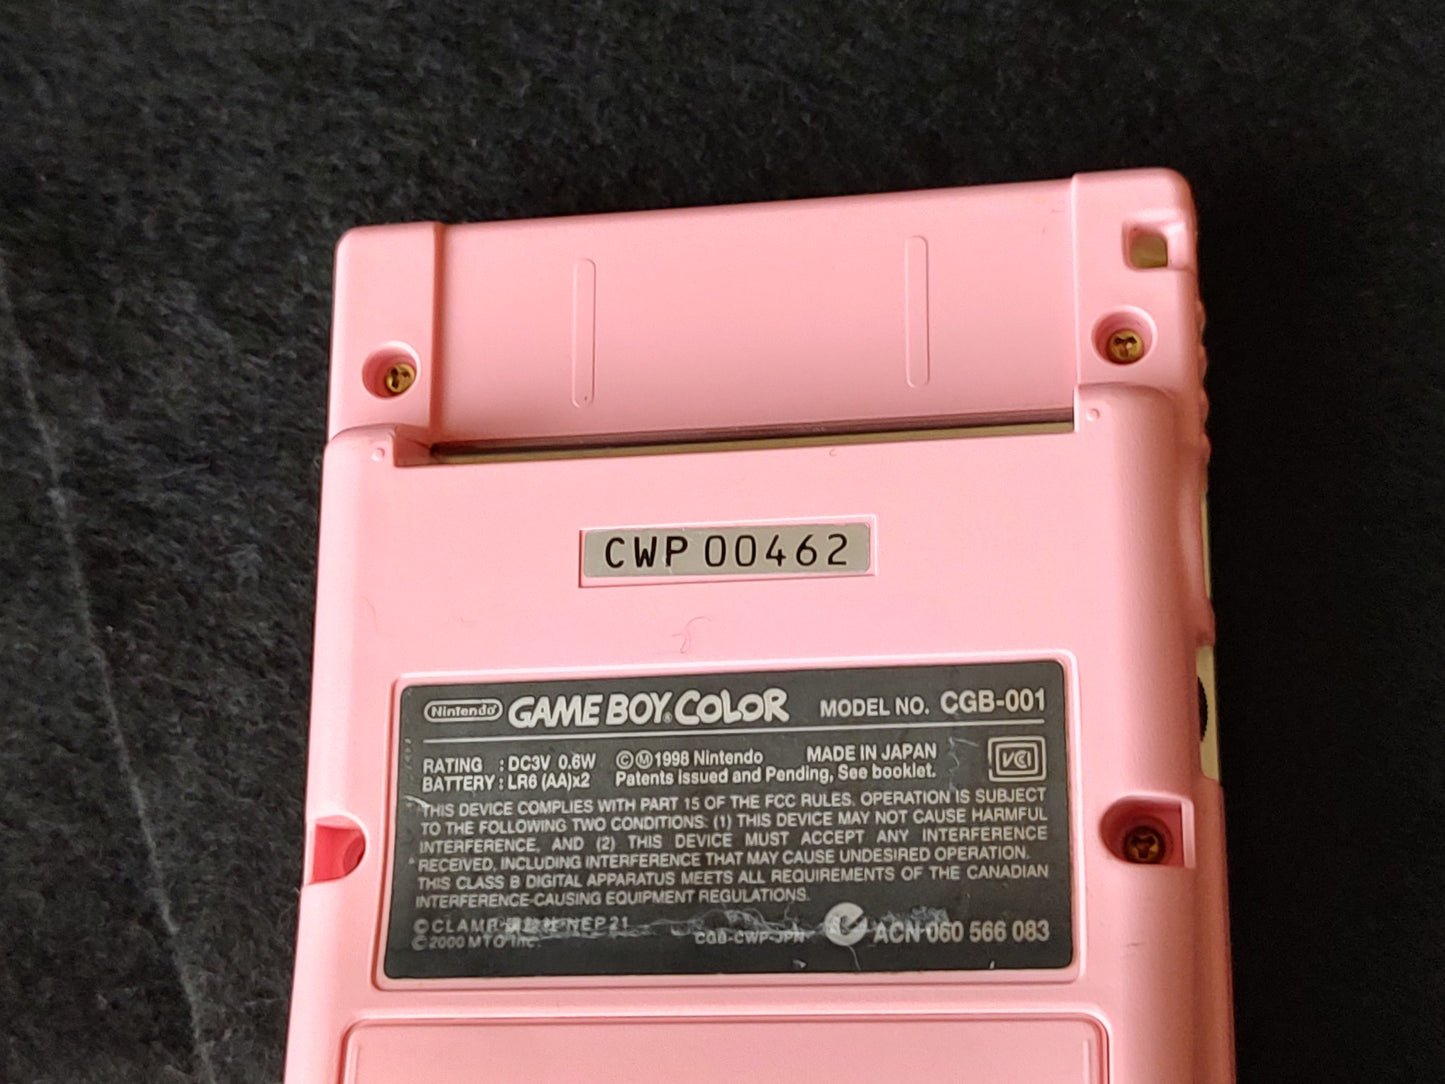 Nintendo Gameboy Color CARD CAPTOR SAKURA Limited edition console Boxed -e0522-